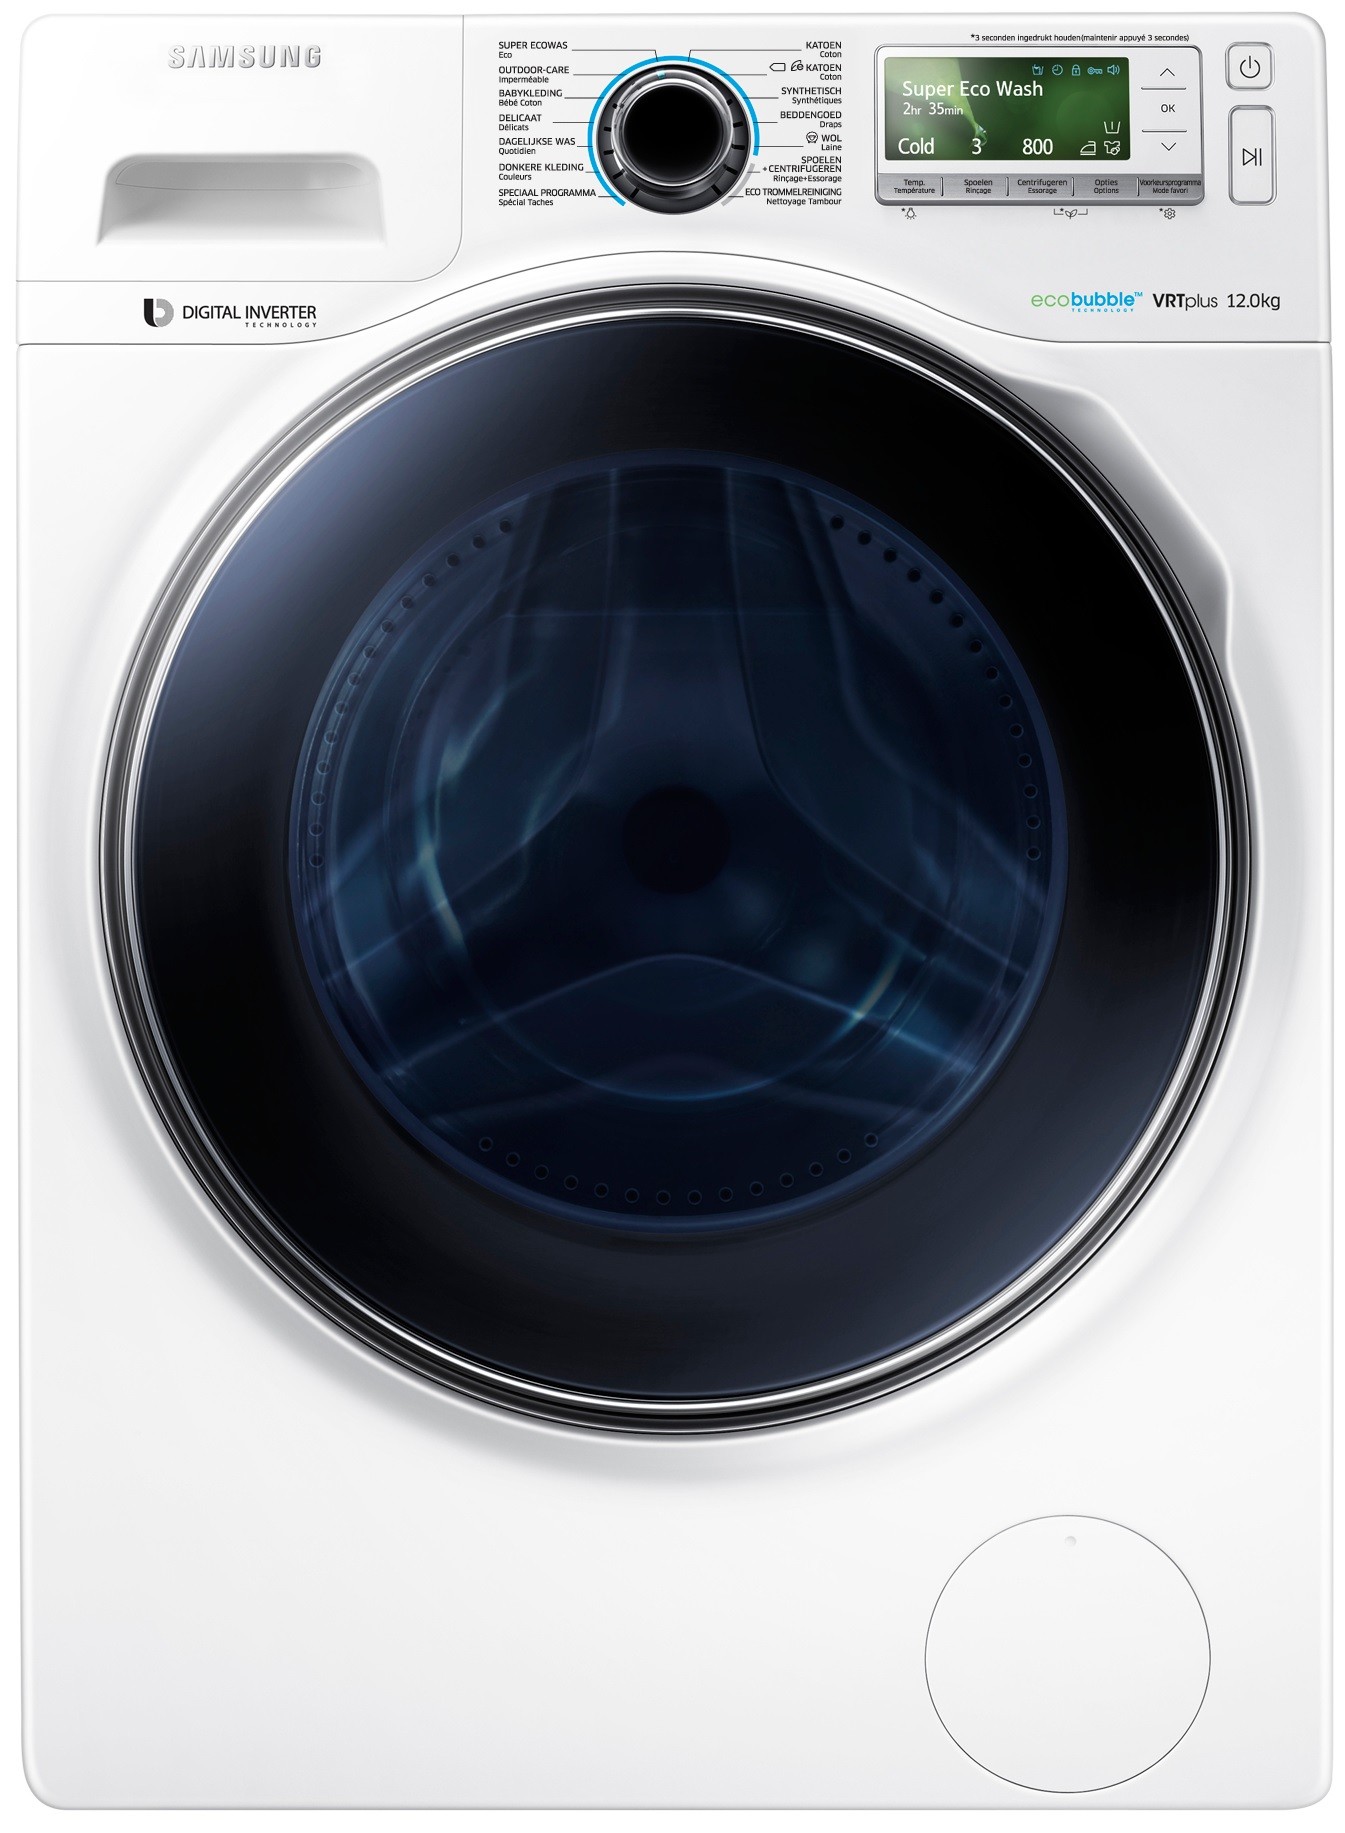 een kopje Ligatie overschot Samsung WW12H8400EW wasmachine, 12 kg. en 1400 toeren